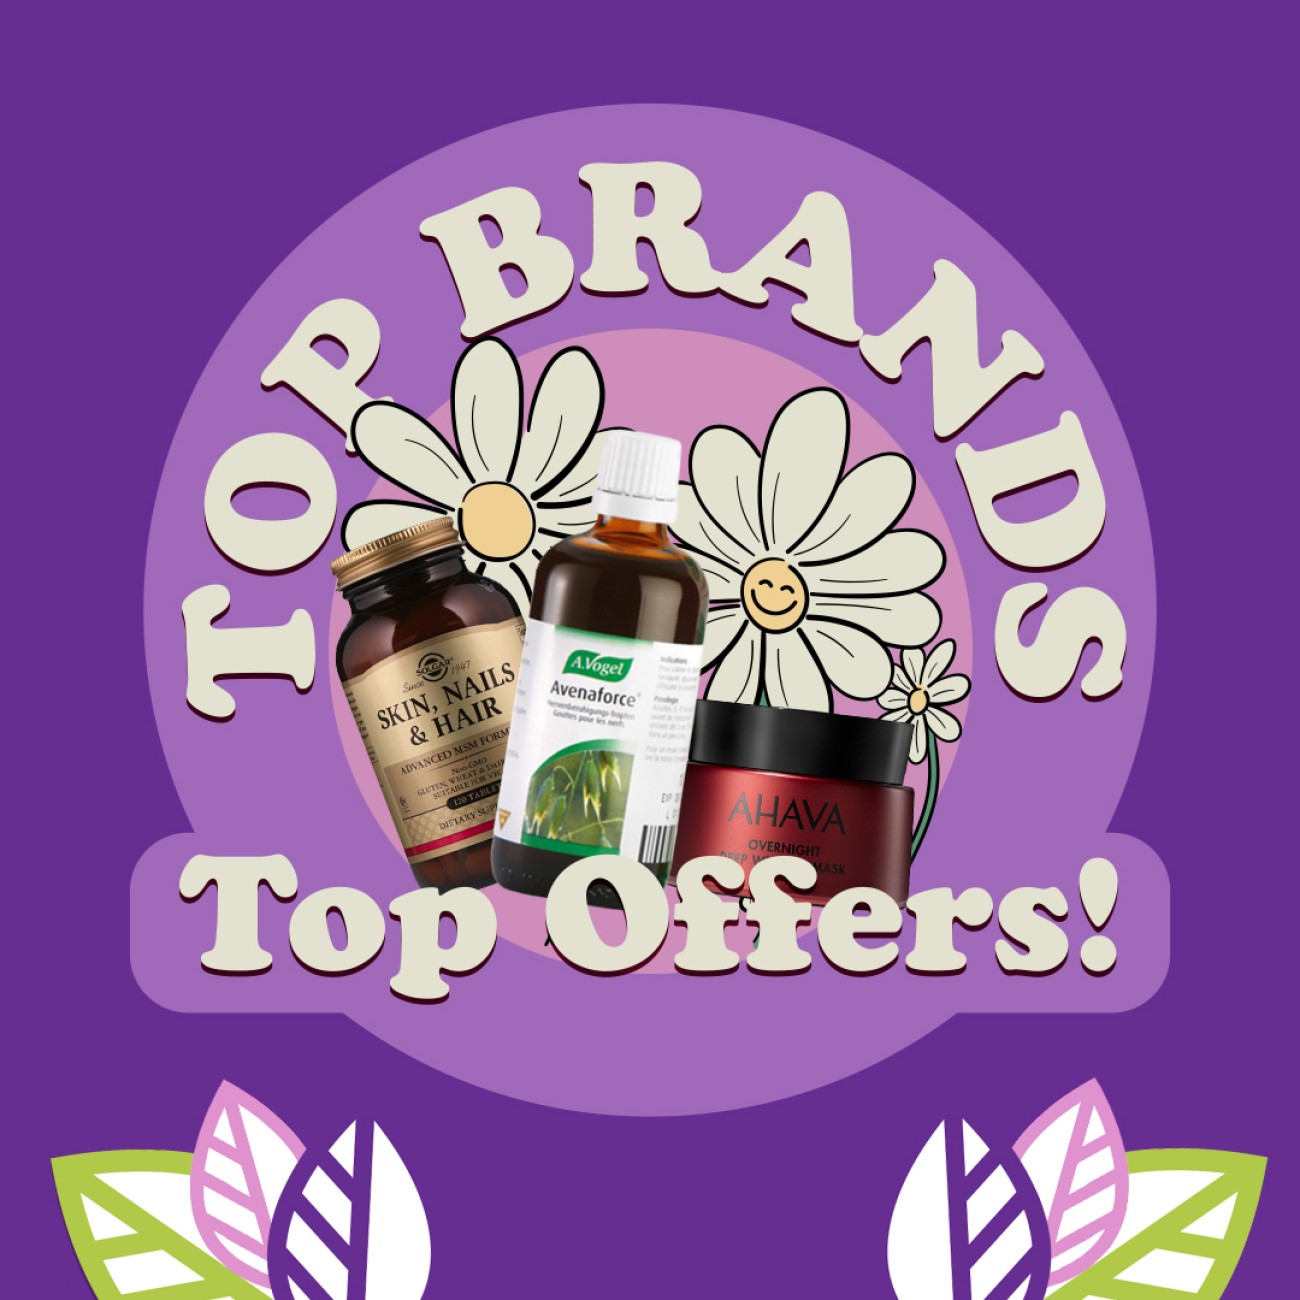 Top Brands,Top Offers!